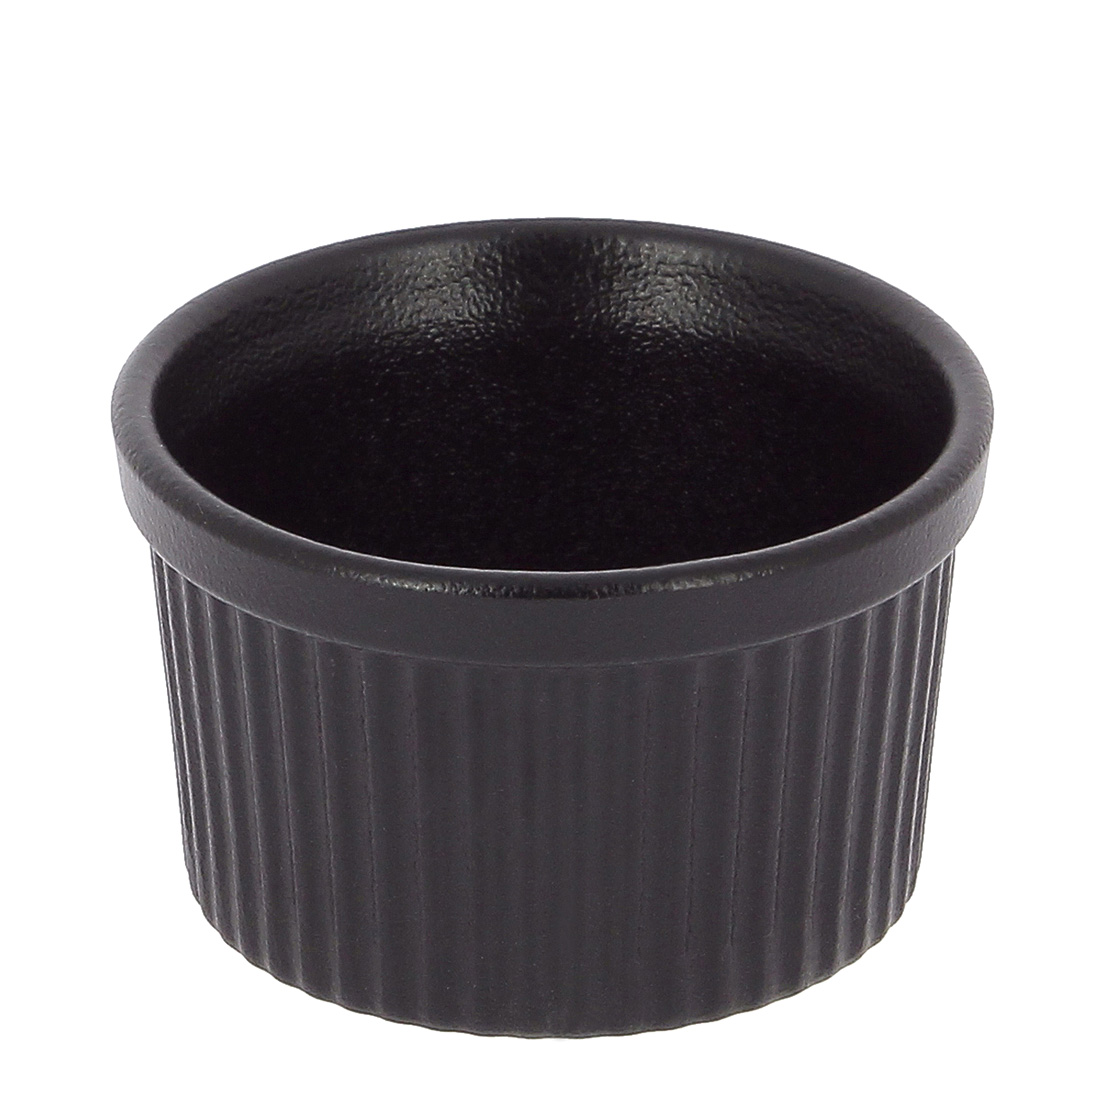 Форма для выпечки Ramekin black, 9 см, 6,5 см, 250 мл, Фарфор, Revol